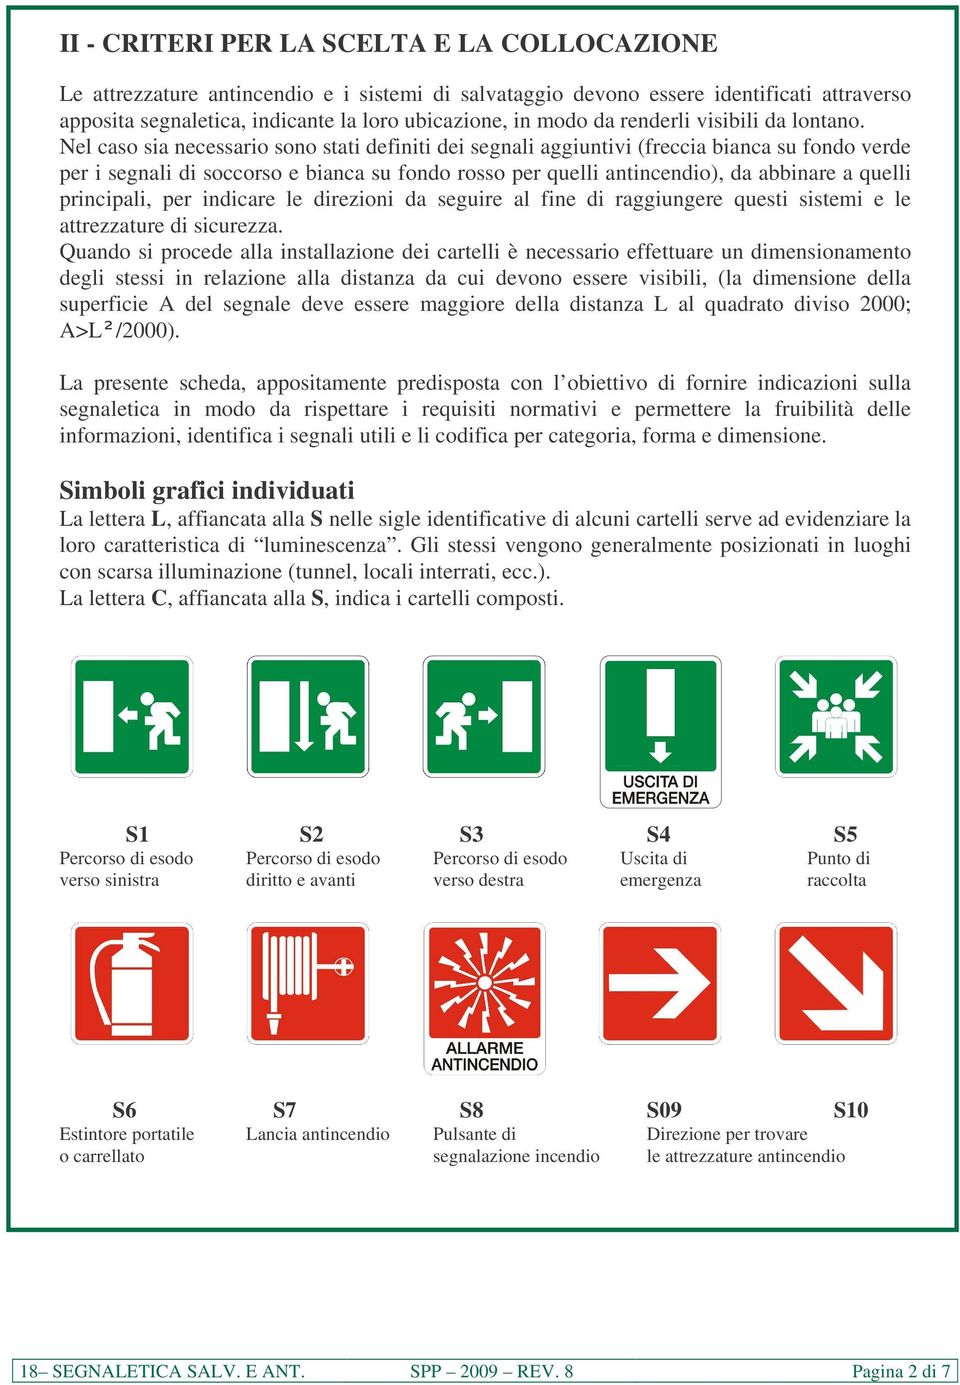 Nel caso sia necessario sono stati definiti dei segnali aggiuntivi (freccia bianca su fondo verde per i segnali di soccorso e bianca su fondo rosso per quelli antincendio), da abbinare a quelli